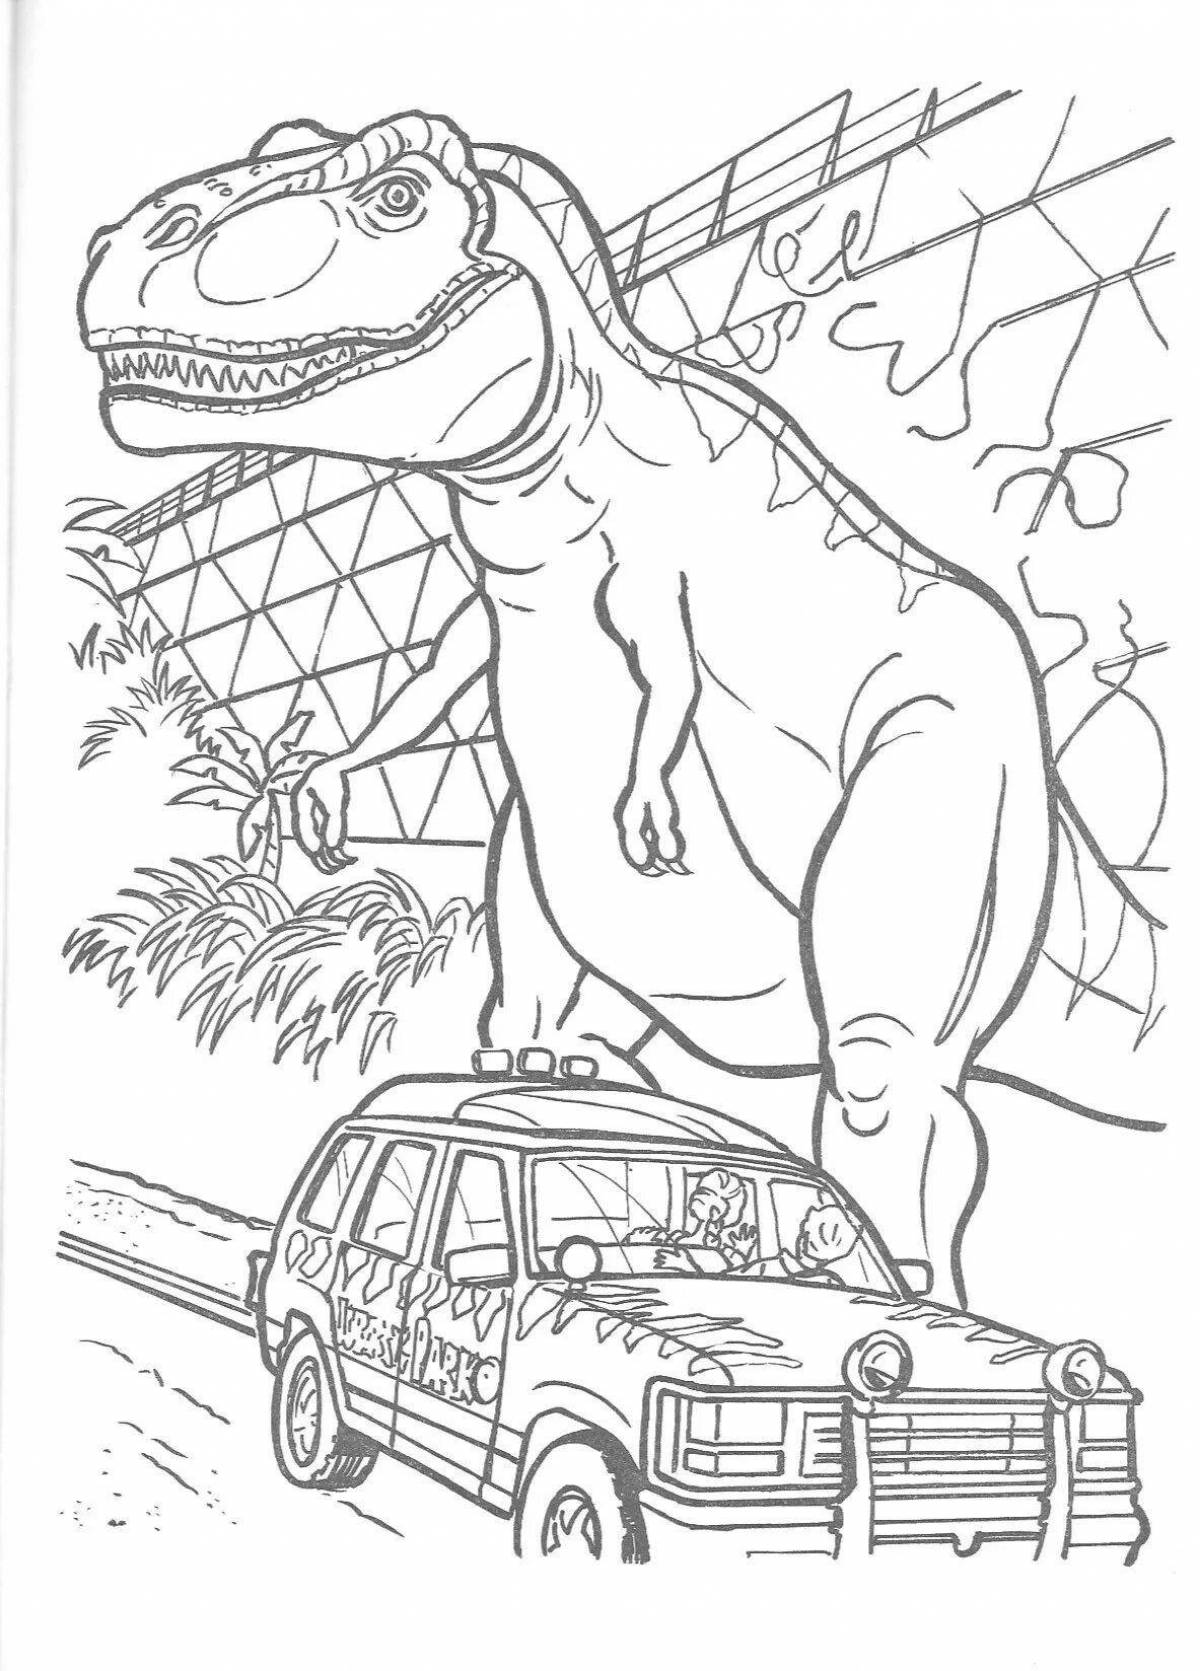 Generous Jurassic Park coloring book